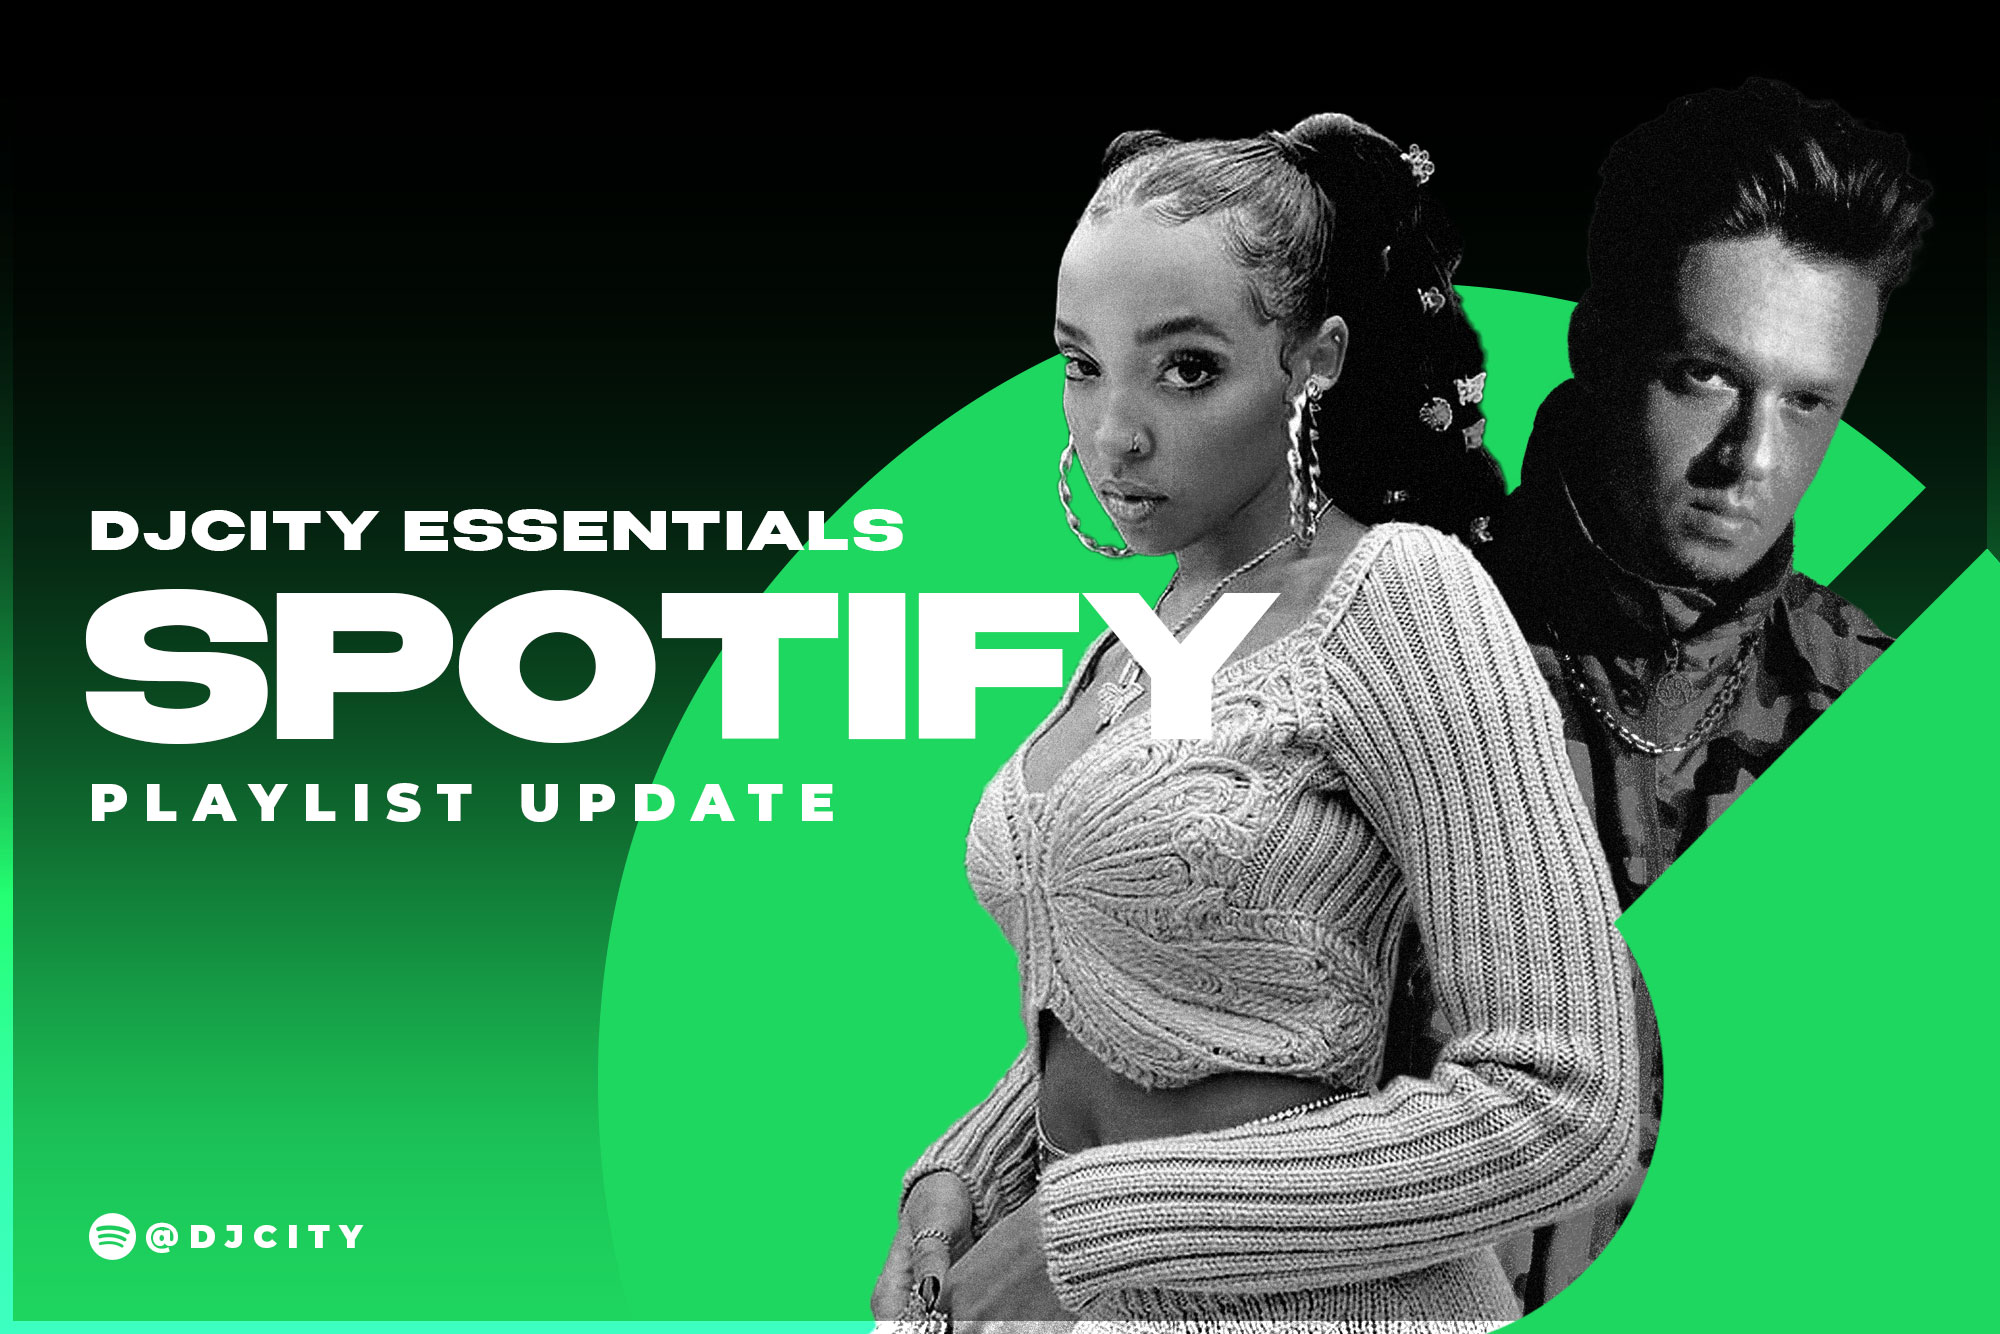 DJcity’s Spotify Playlist Update: Apr. 27